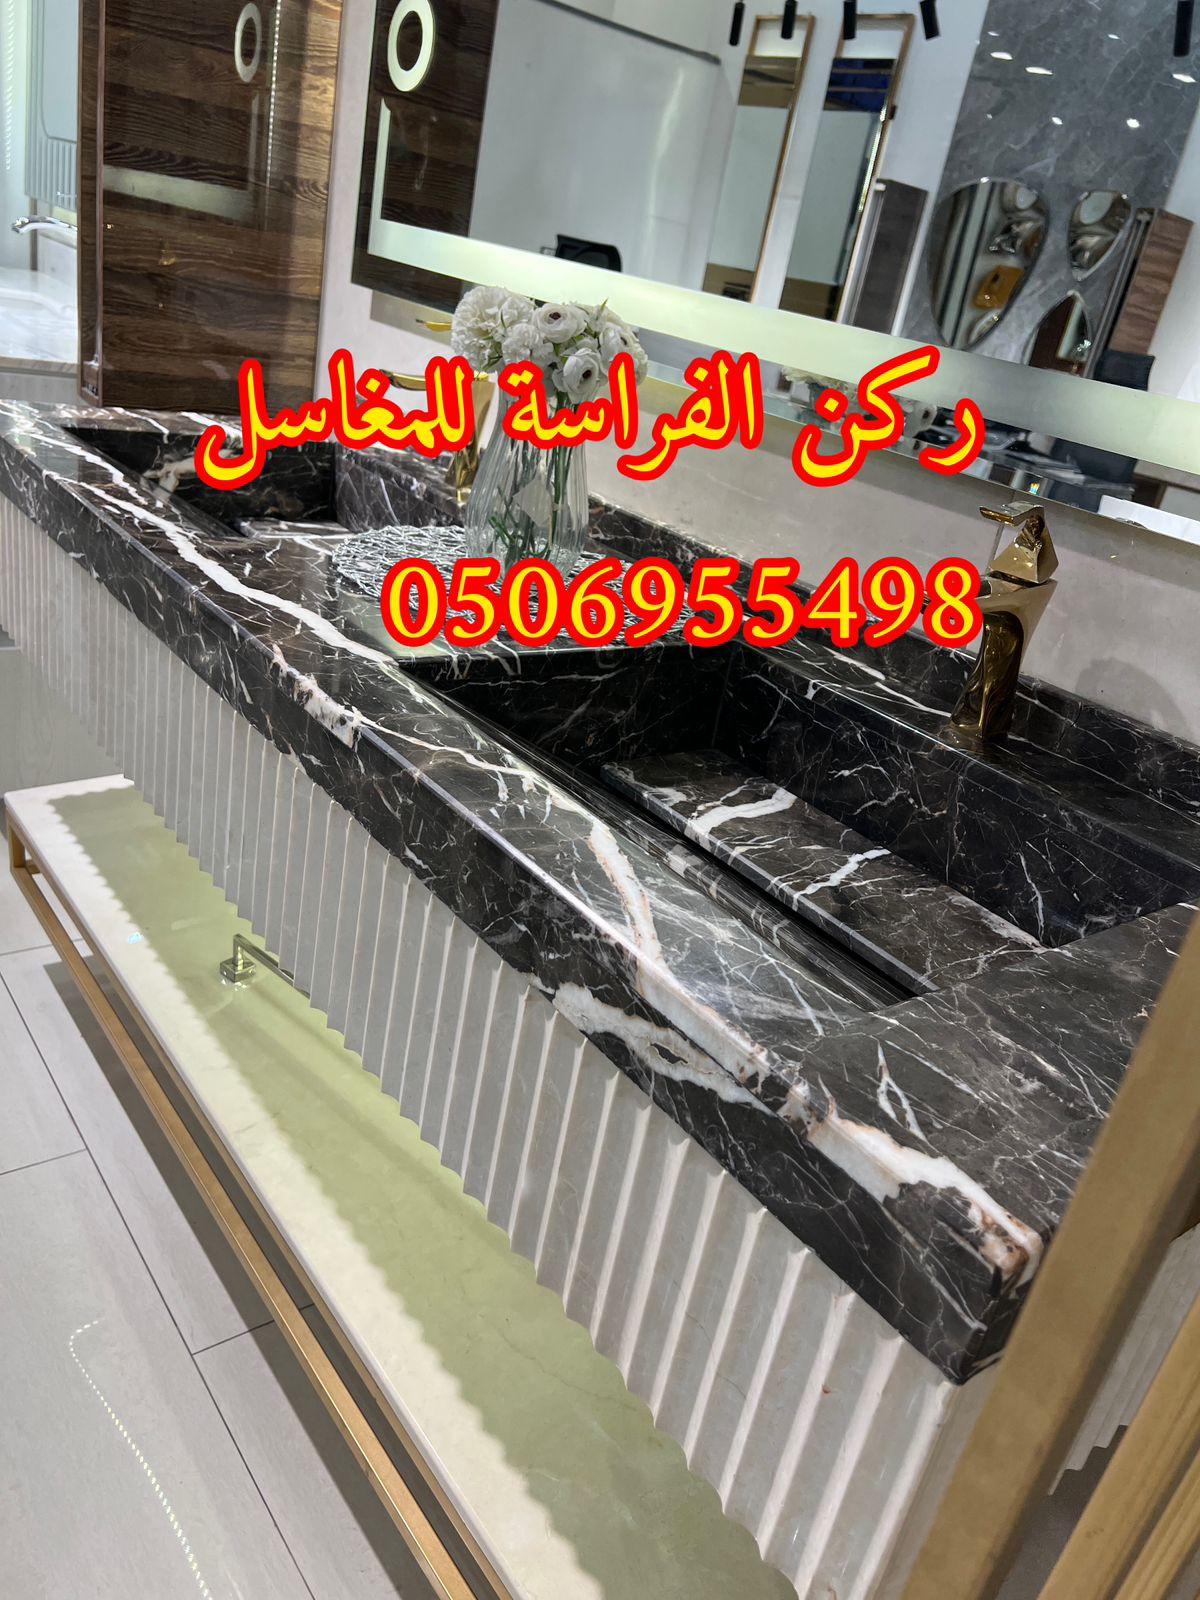 الرياض - تفصيل احواض مغاسل رخام في الرياض,0506955498 867719158